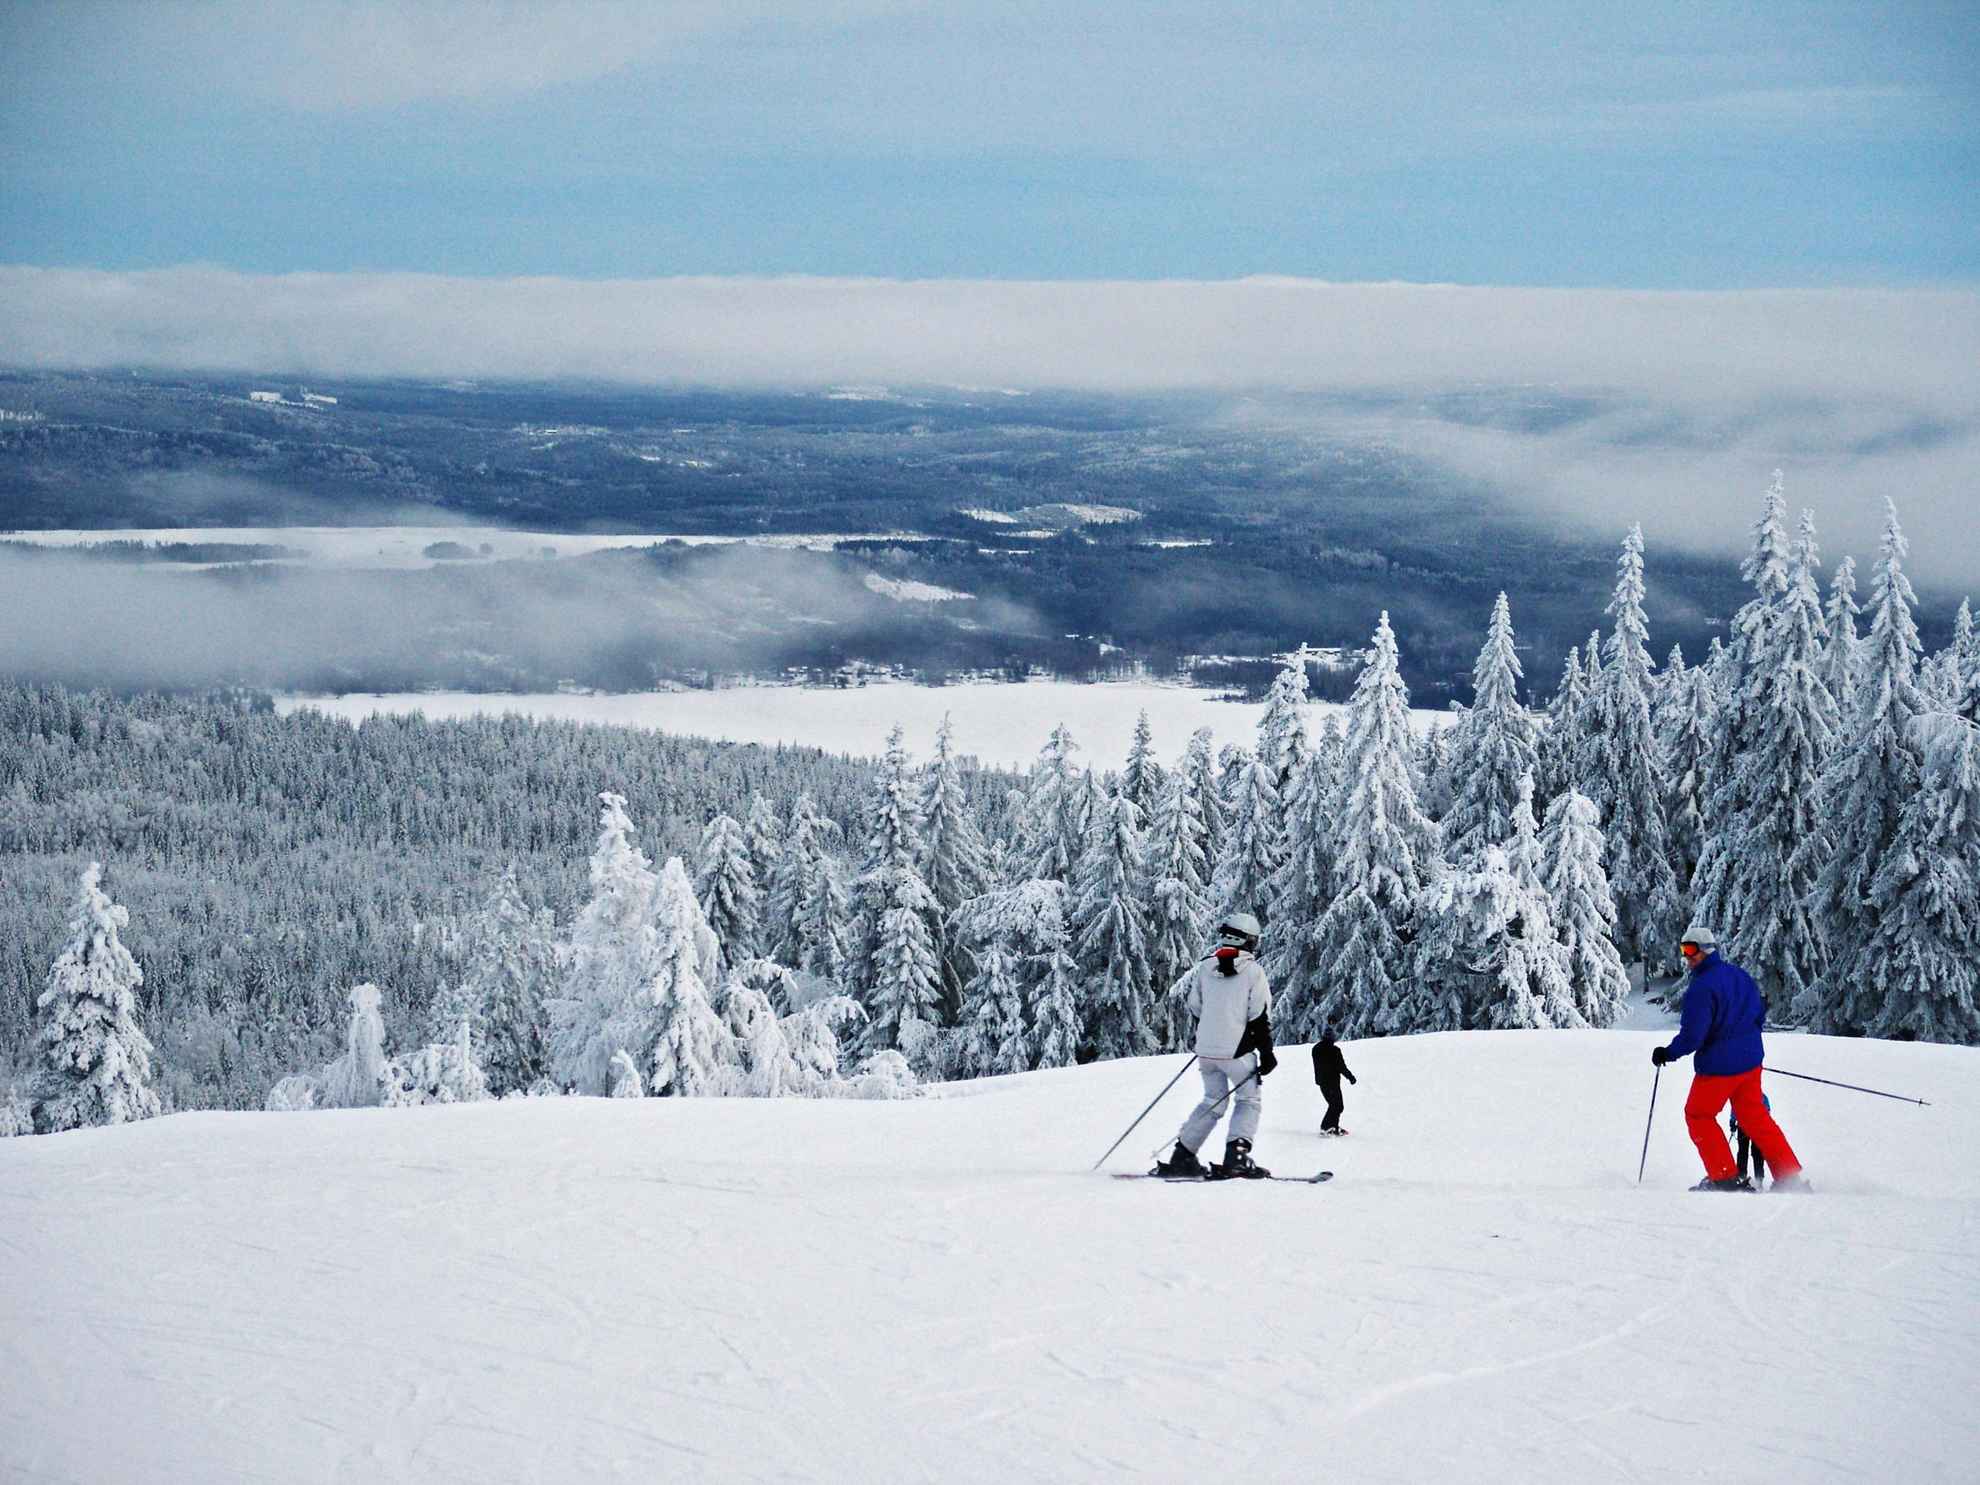 Une vue de la montagne enneigée. Les gens descendent la piste de ski.